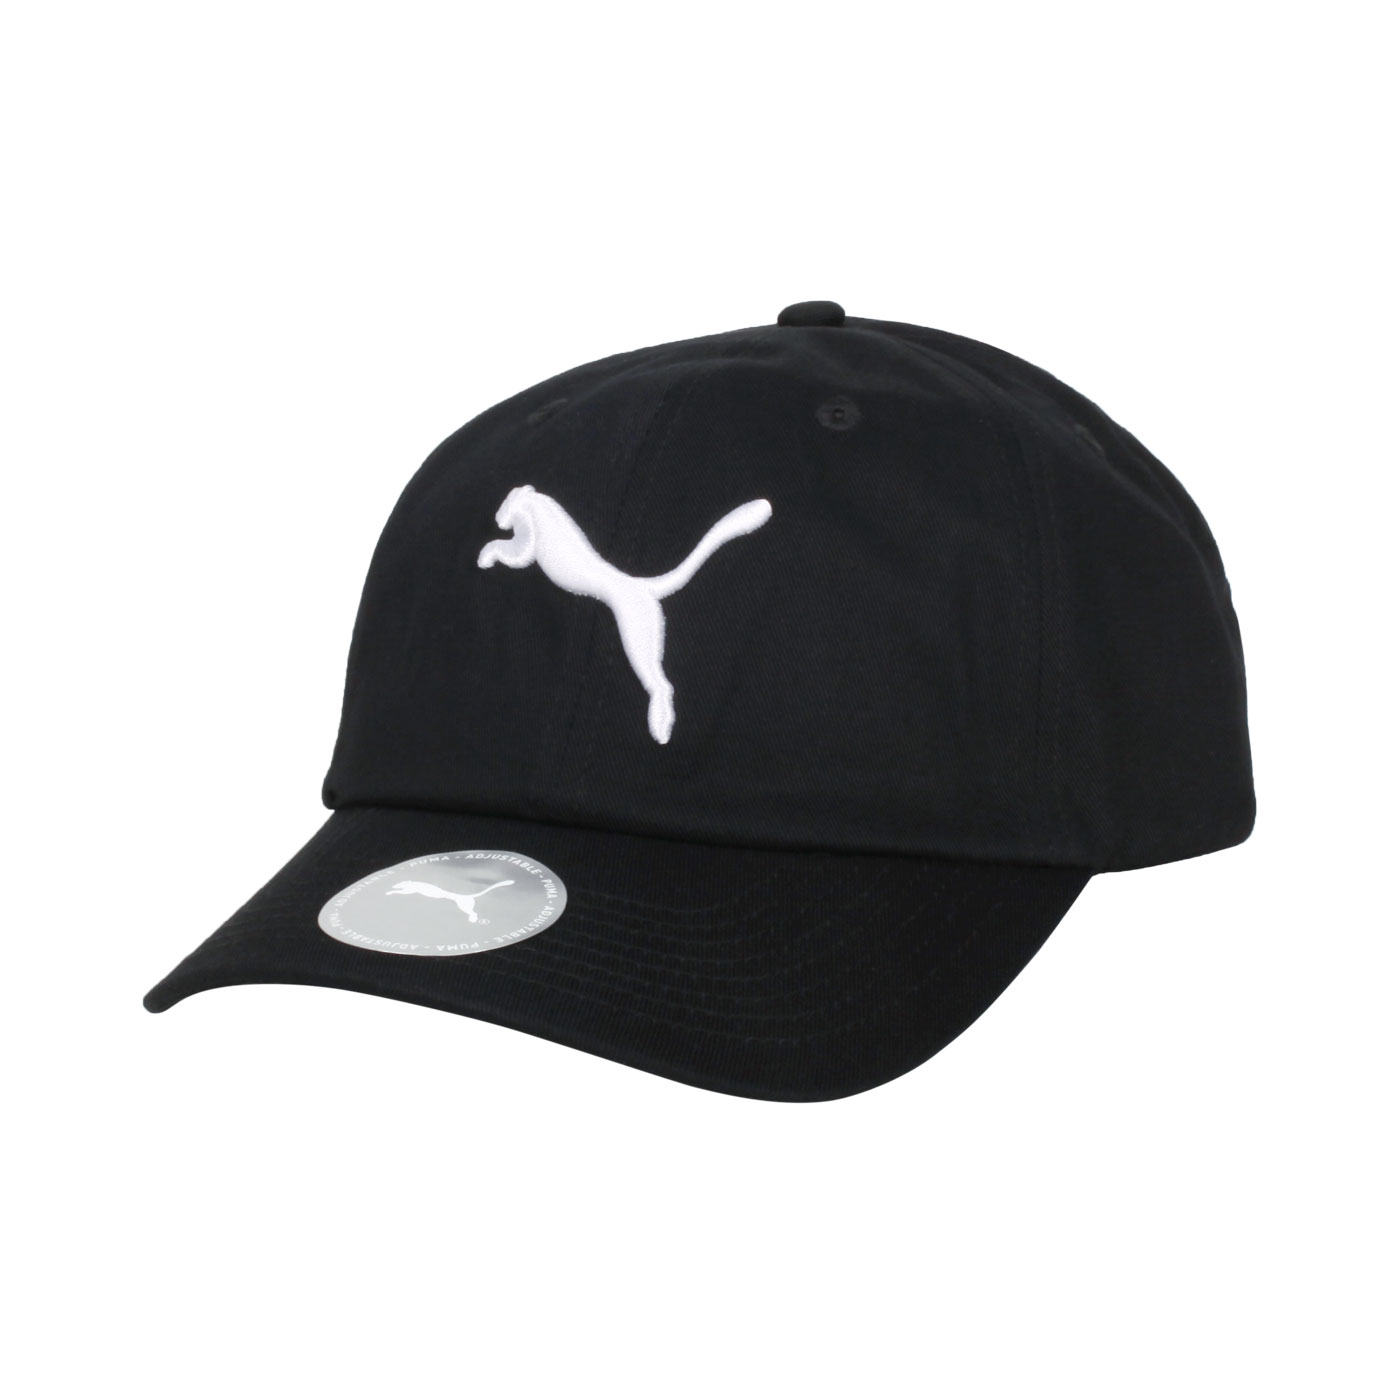 PUMA 基本系列棒球帽 05291902 - 黑白